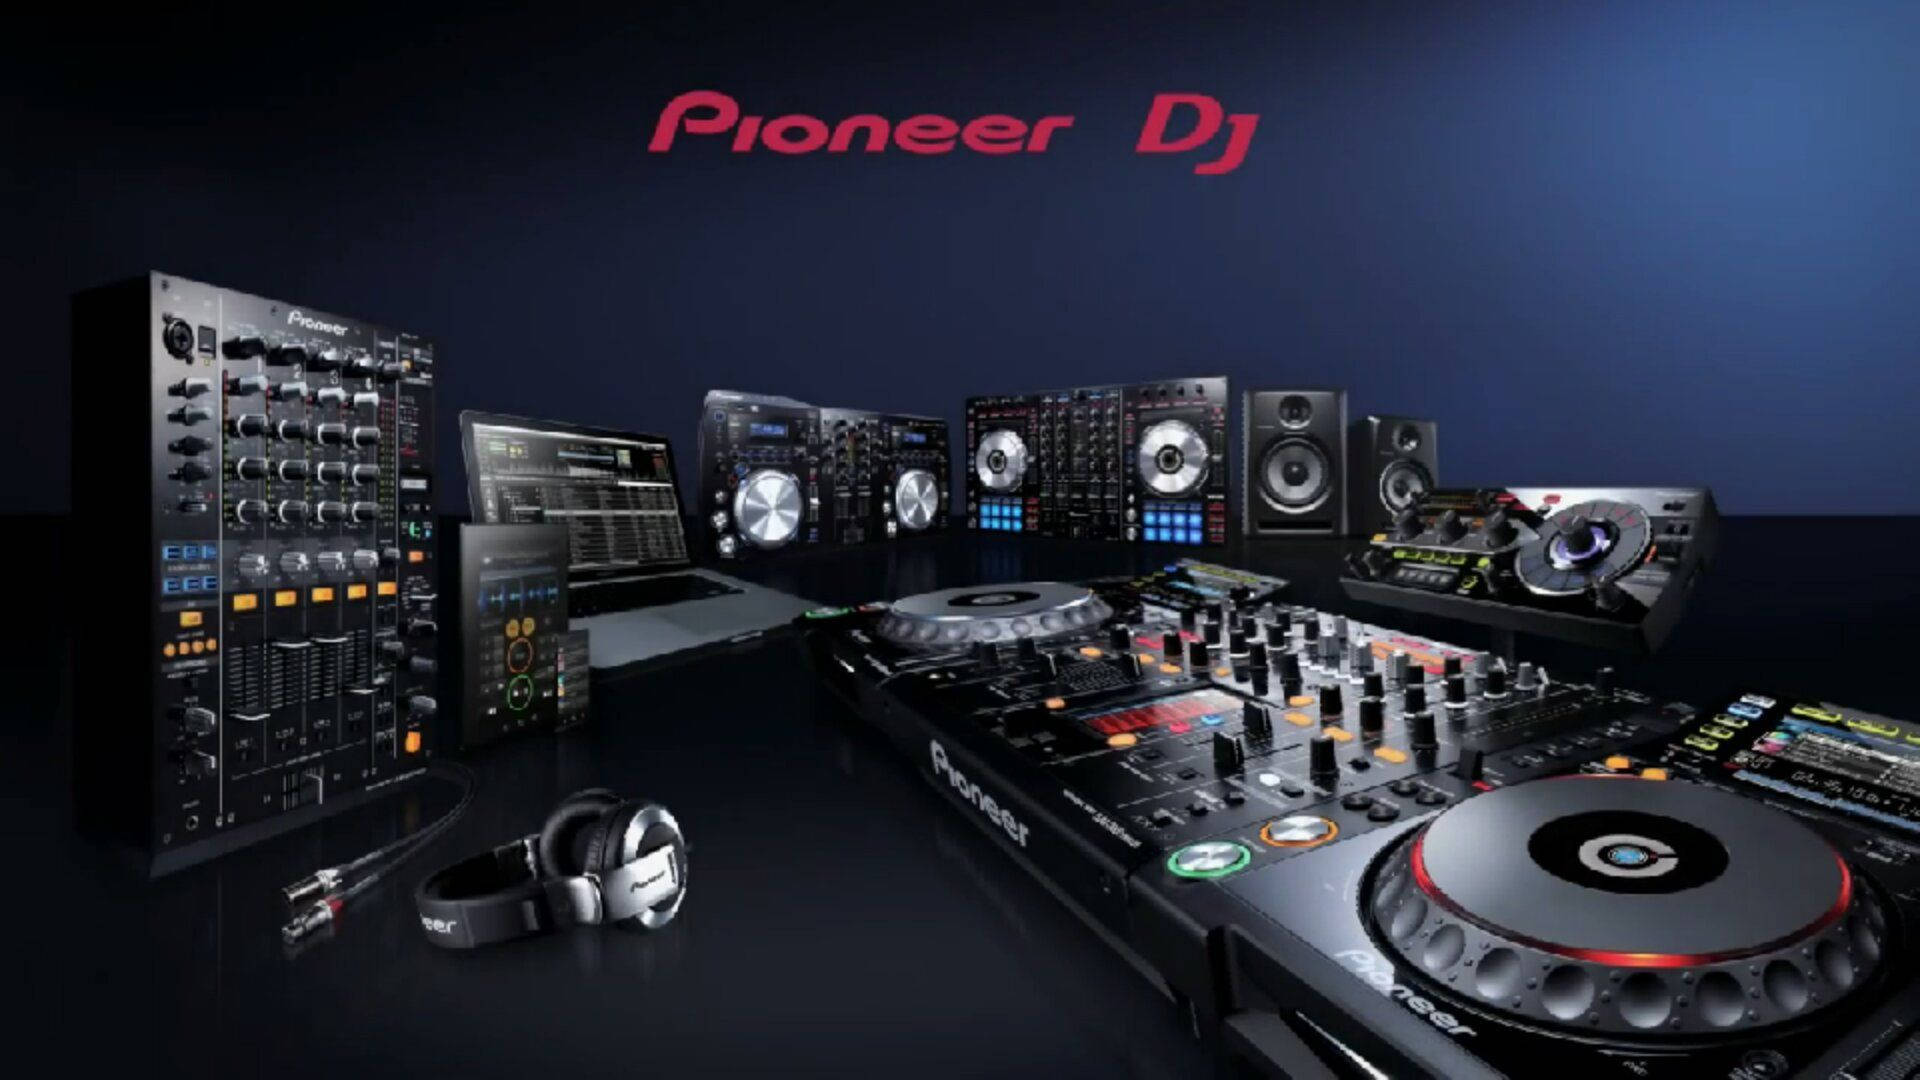 Download Pioneer Dj Mixer Equipment Wallpaper